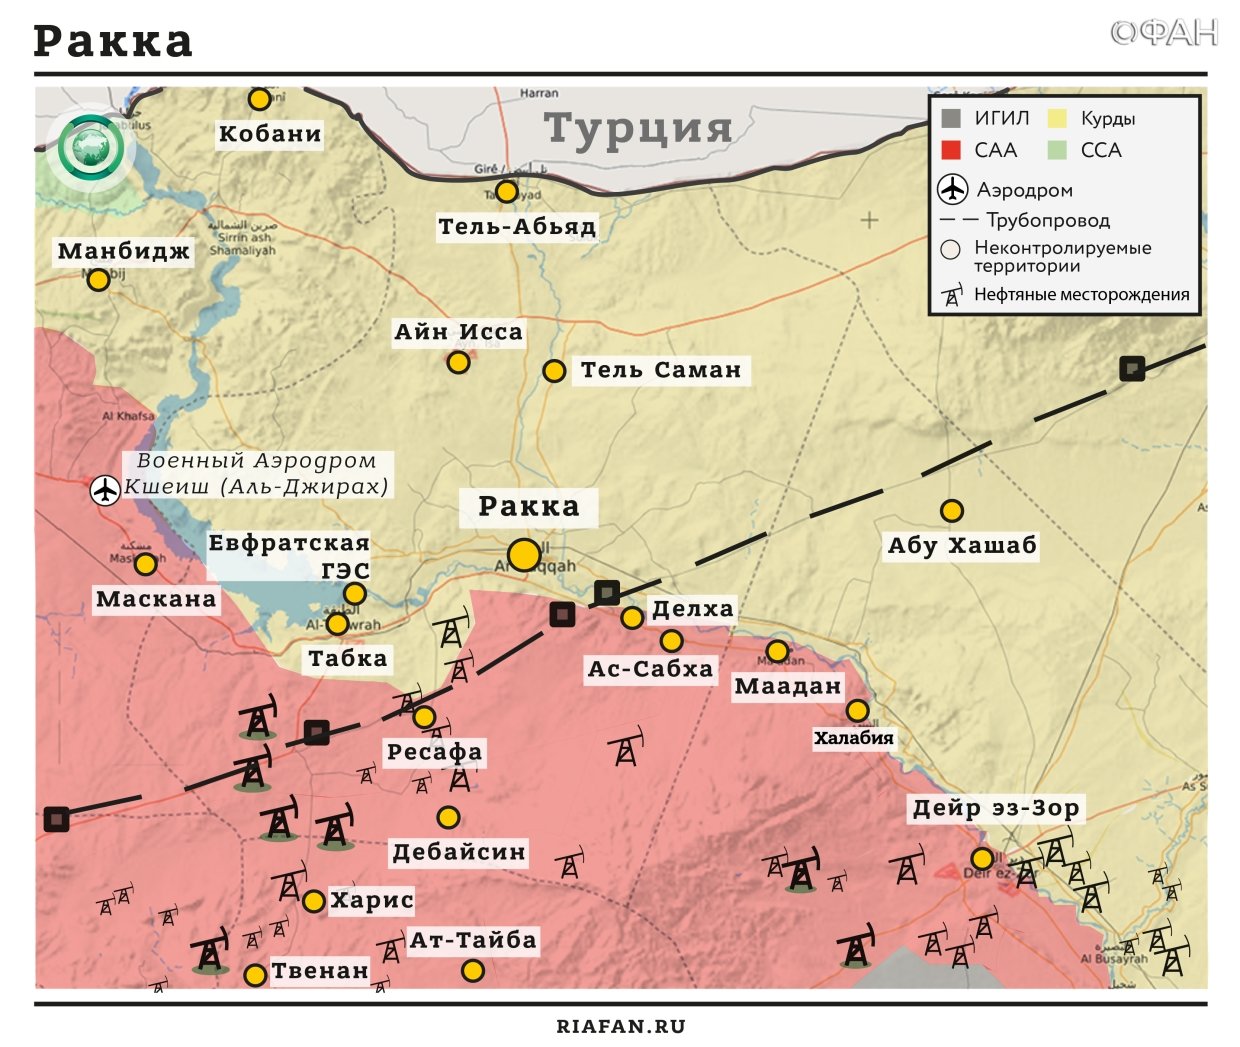 Сирия итоги за сутки на 12 октября 06.00: под ударами ВВС коалиции погибло четыре жителя Дейр-эз-Зора, в Хаме ИГ захватило у «Ан-Нусры» химоружие